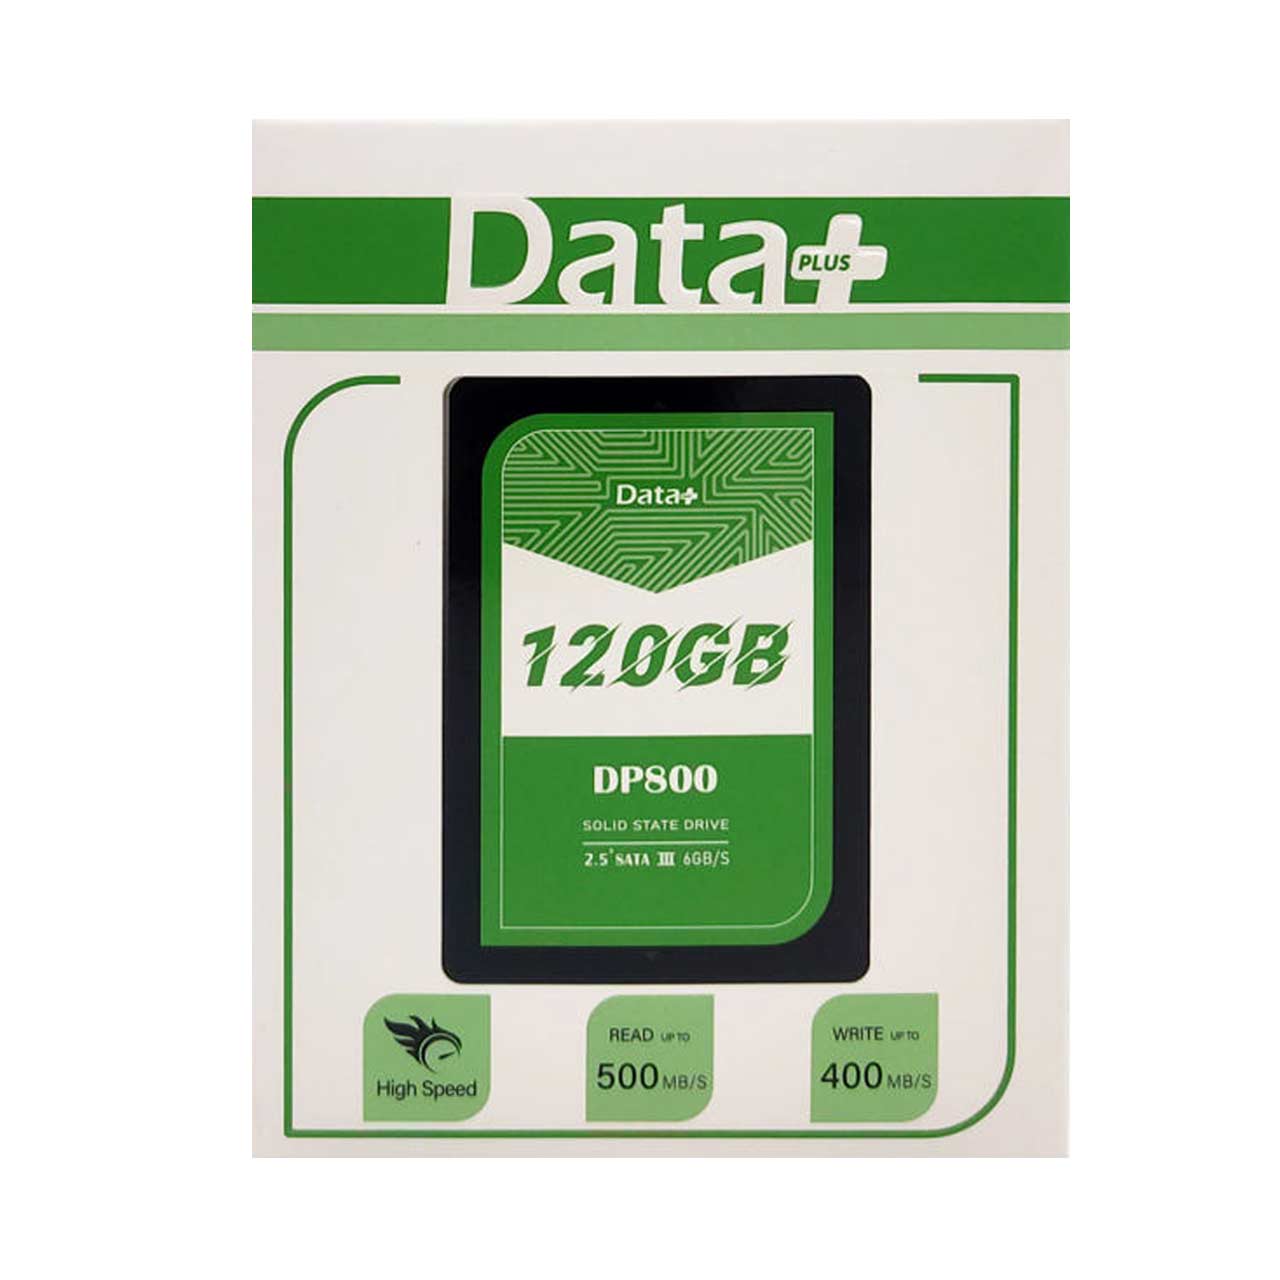 هارد Data Plus SSD مدل DP800 ظرفیت 120GB - مشکی (گارانتی IPM)